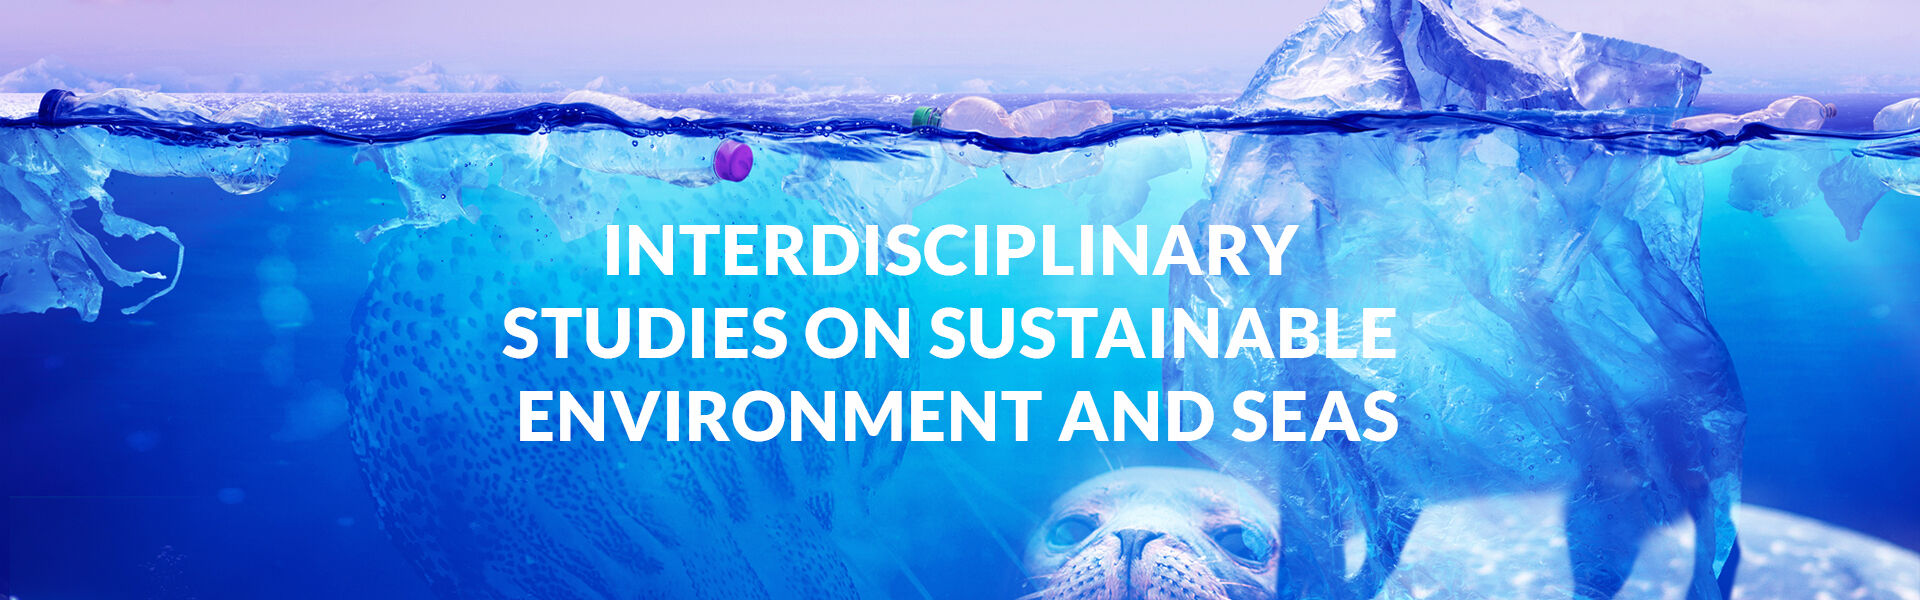 Ulisses - University of Lisbon Interdisciplinary Studies on Sustainability an Seas